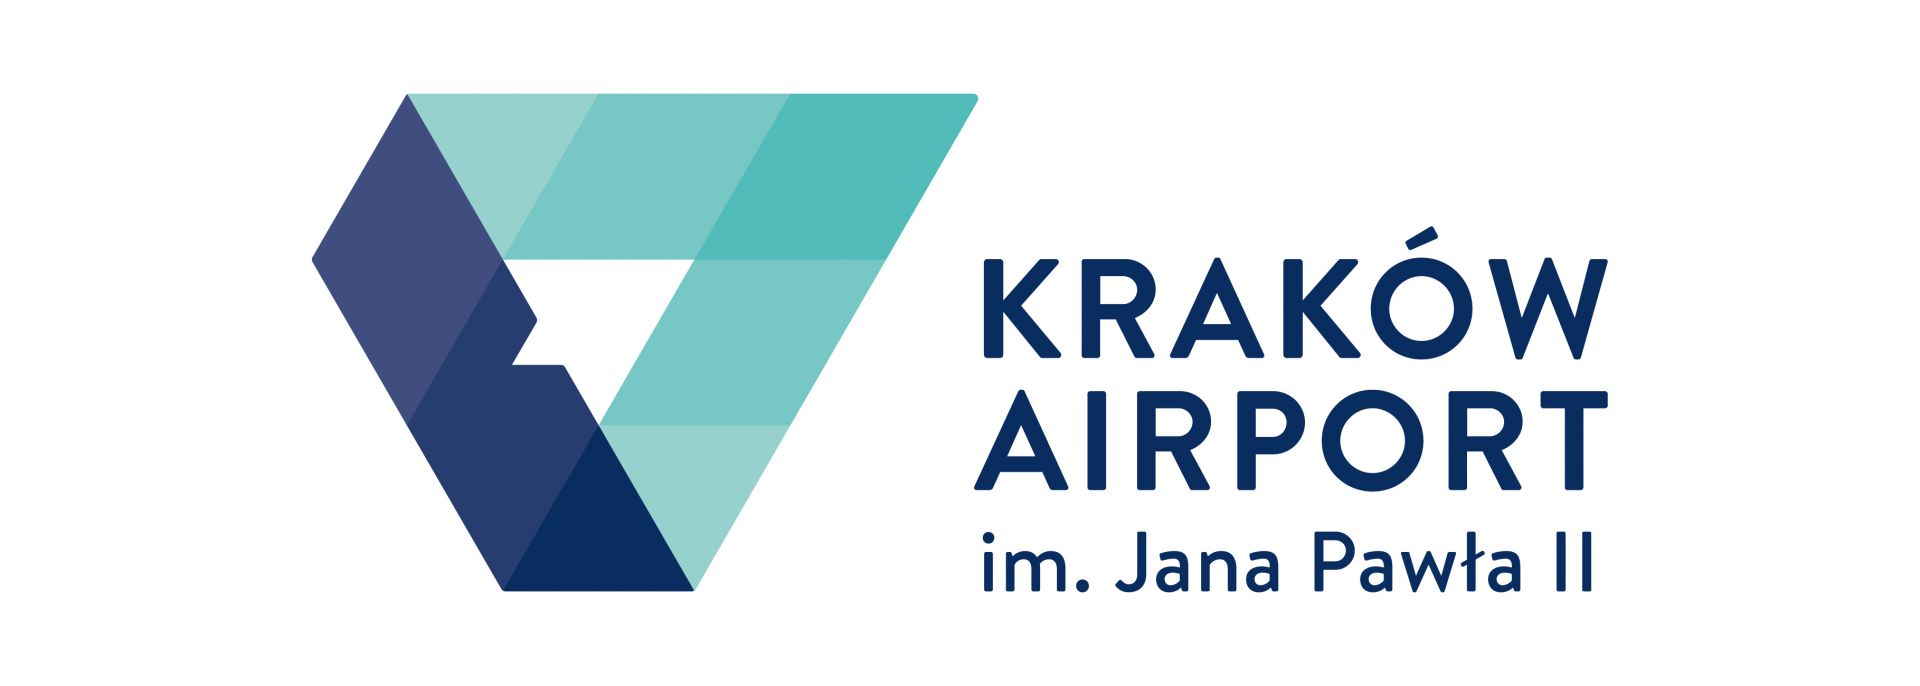 logo-krakow-airport-cmyk-1610715491gz2vT.jpg (63 KB)